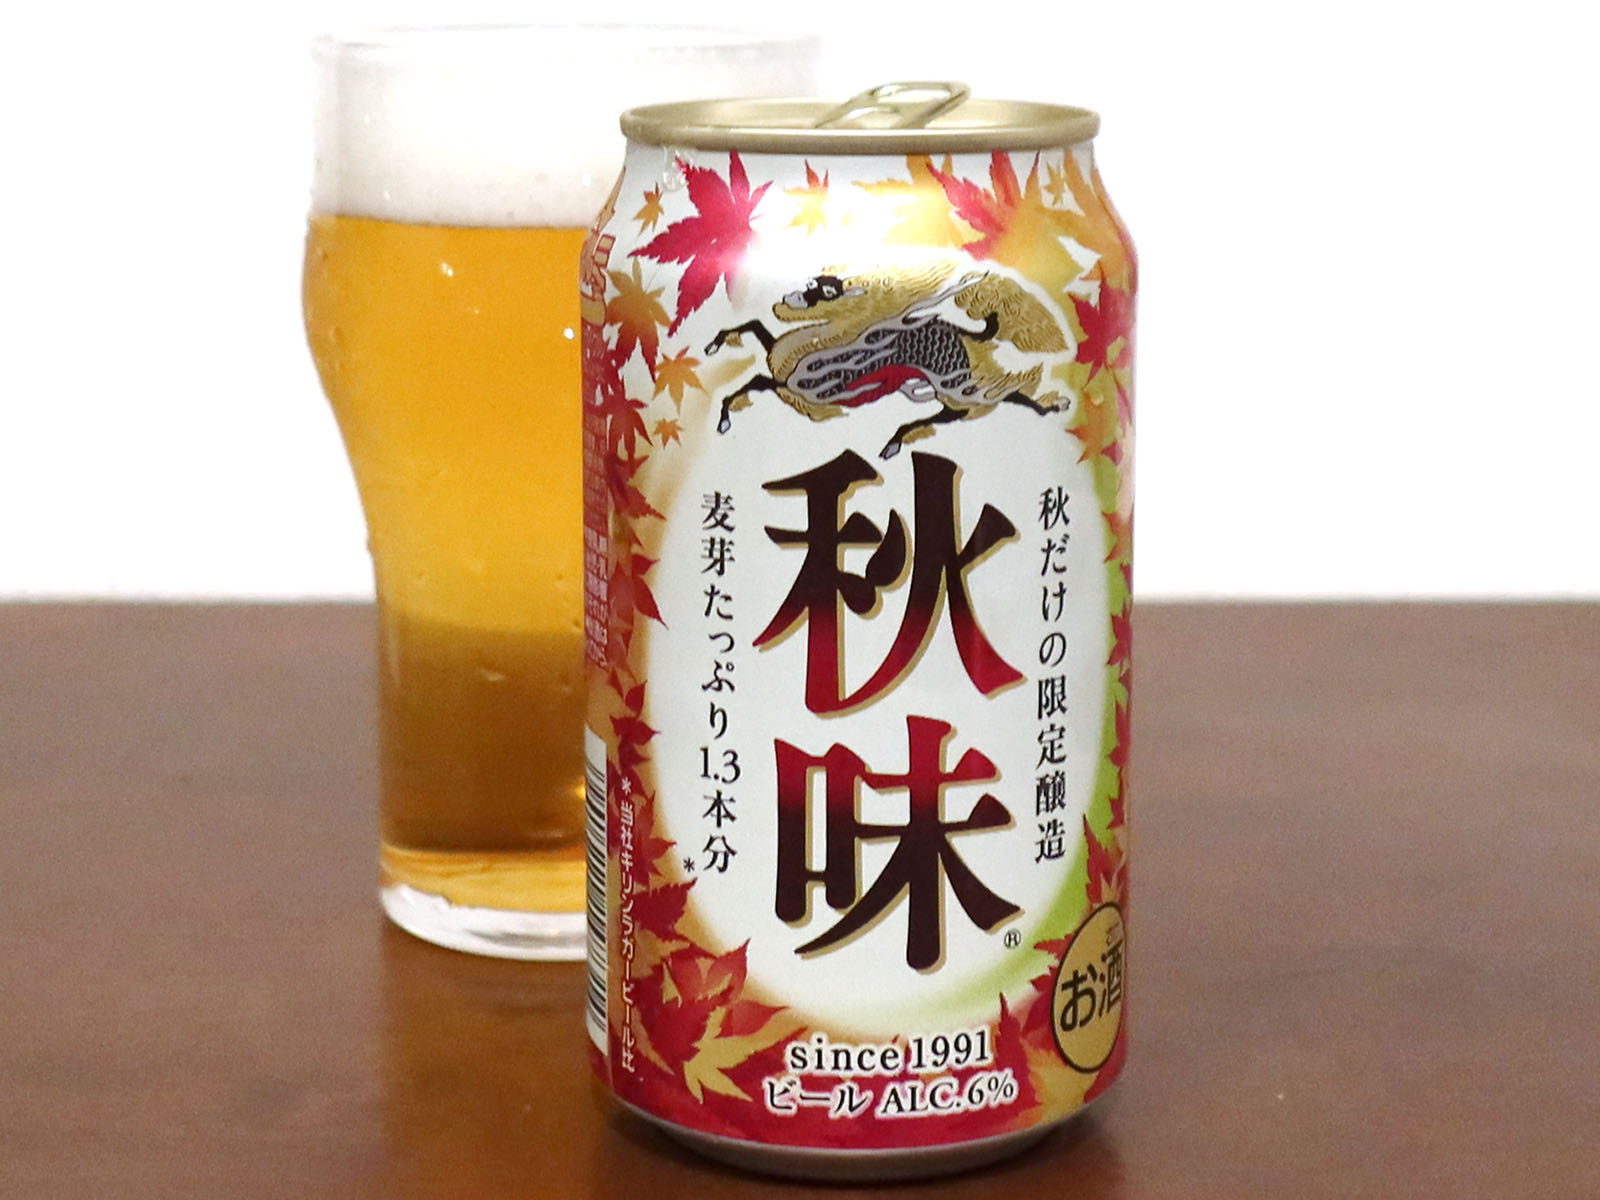 キリンビール キリン 秋味 21 生ビールブログ